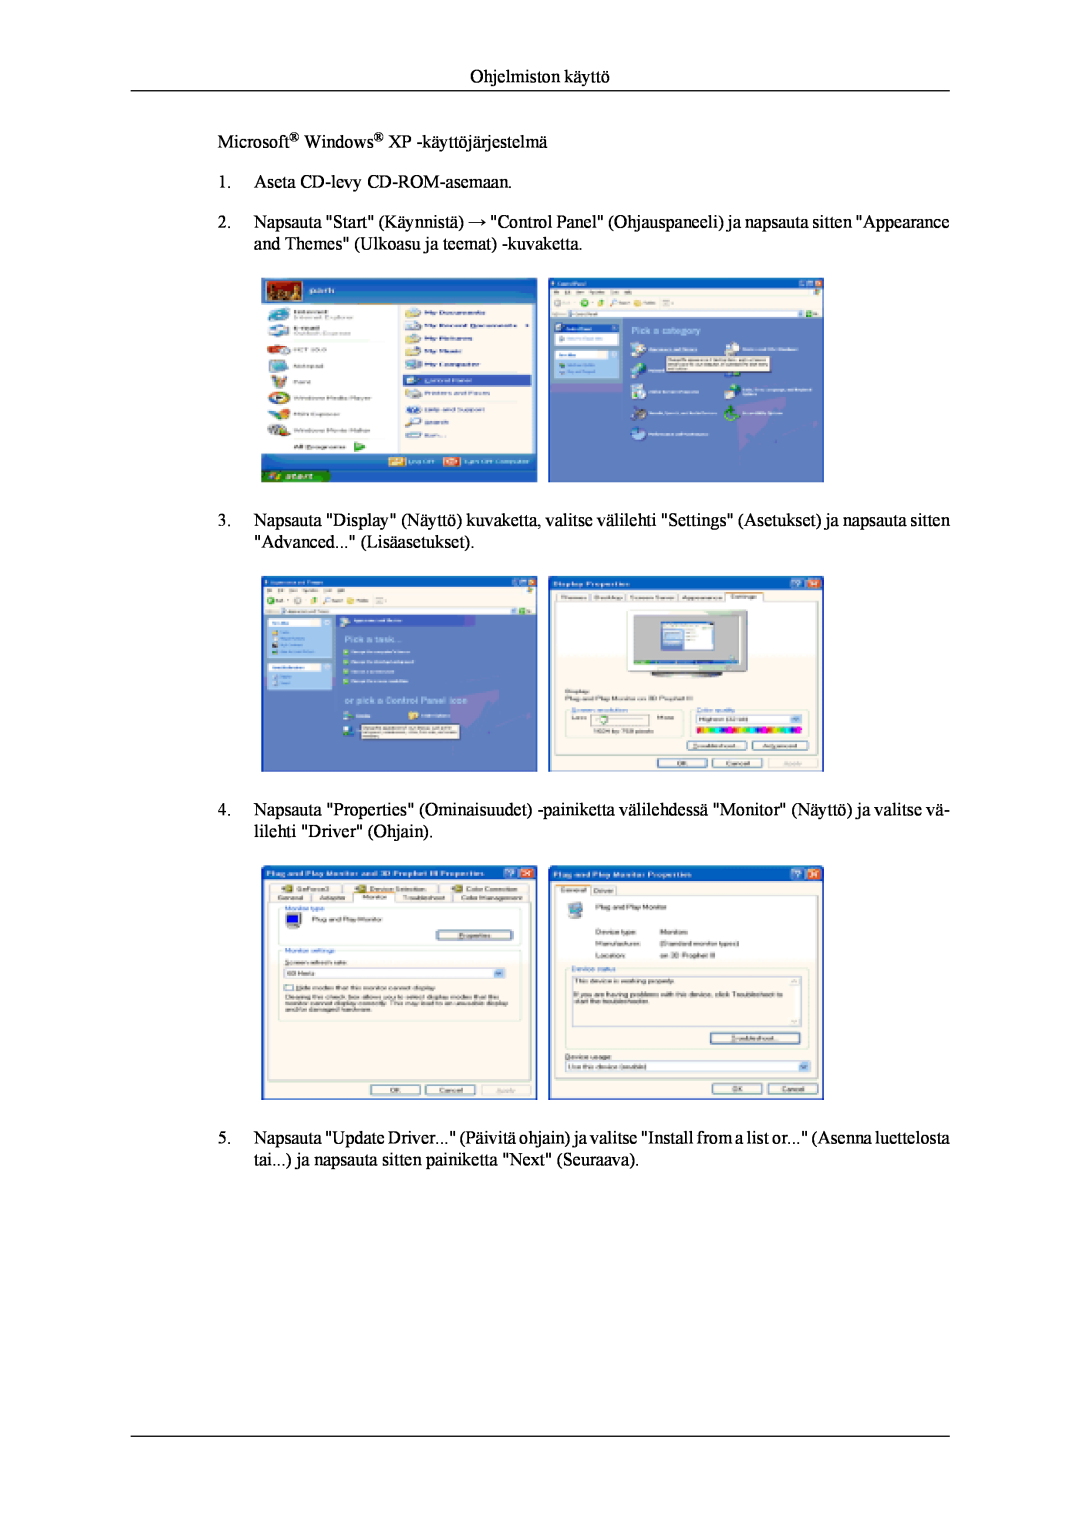 Samsung LS22TDVSUV/EN manual Ohjelmiston käyttö Microsoft Windows XP -käyttöjärjestelmä, Aseta CD-levy CD-ROM-asemaan 